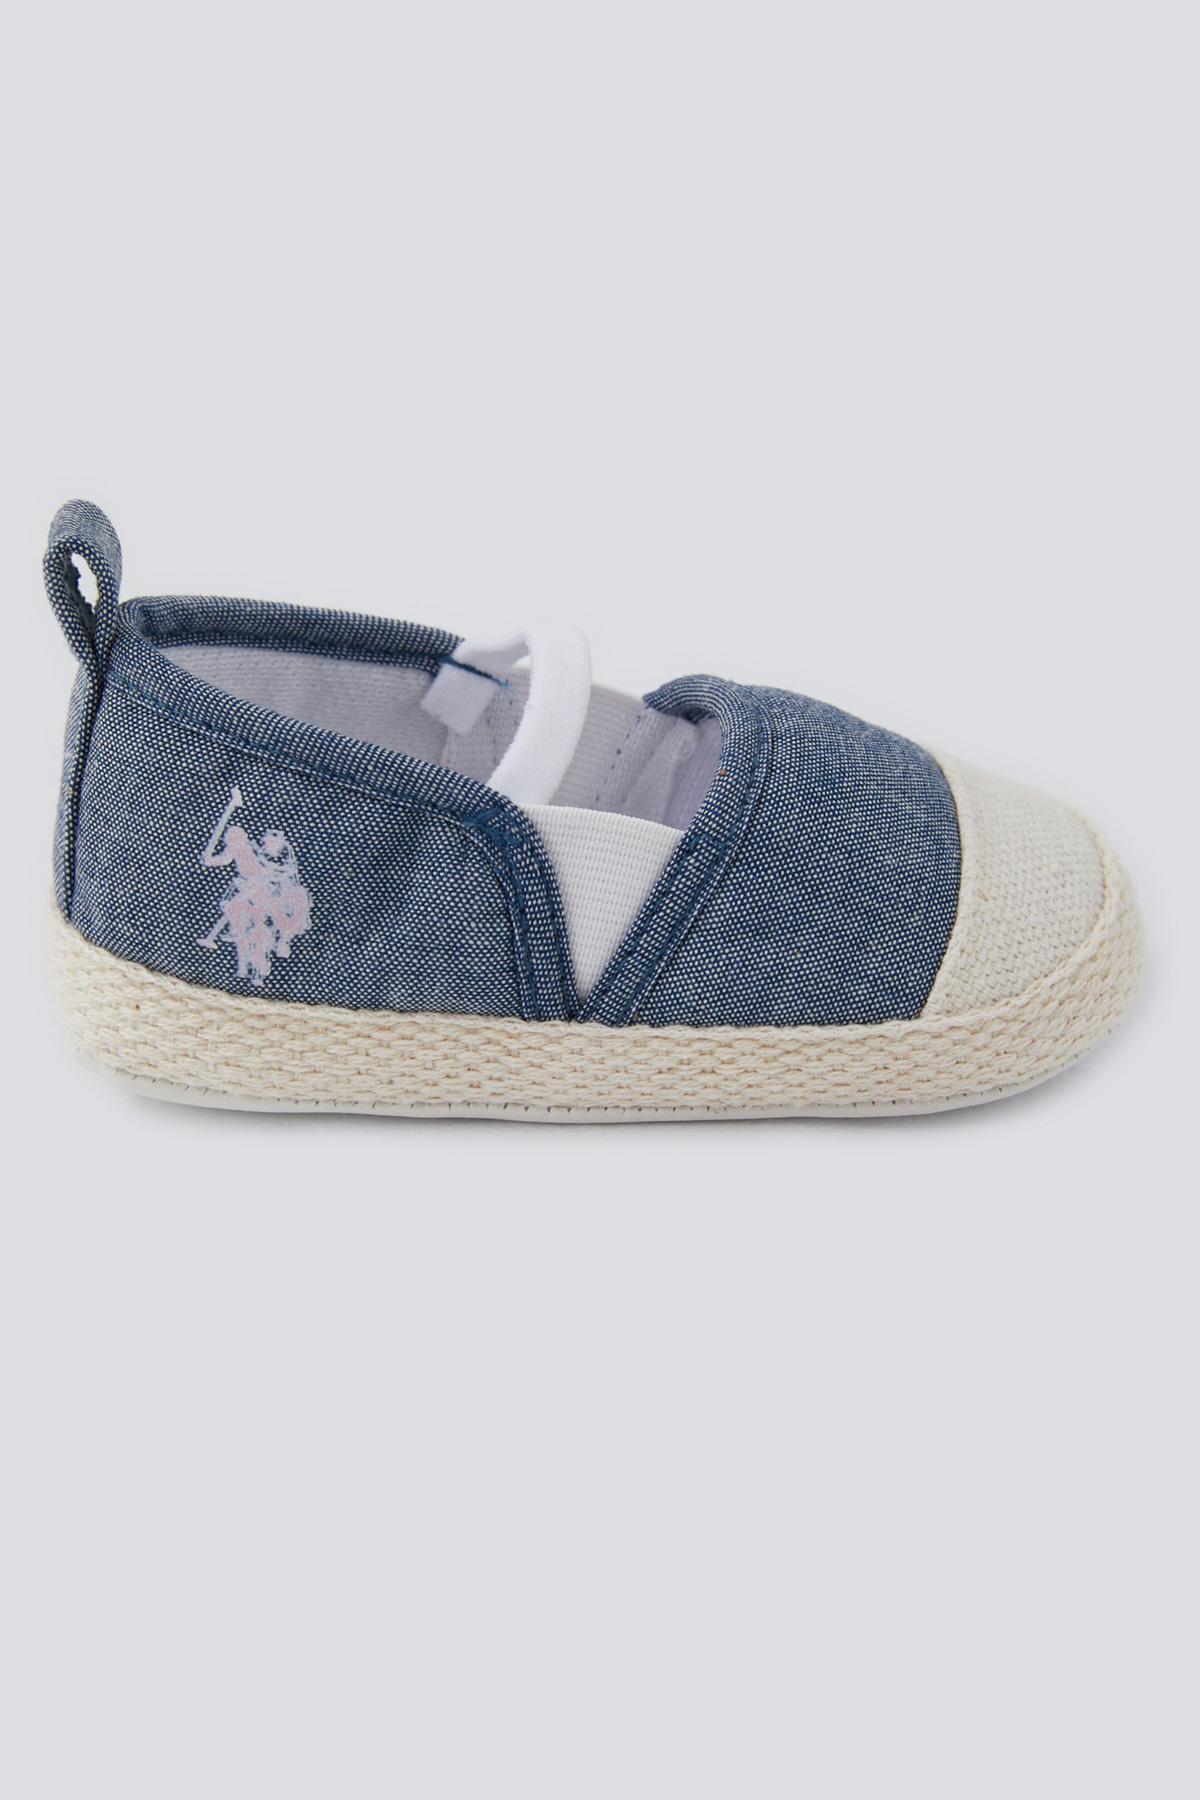 Selected image for U.S. POLO ASSN. Cipele za bebe teget